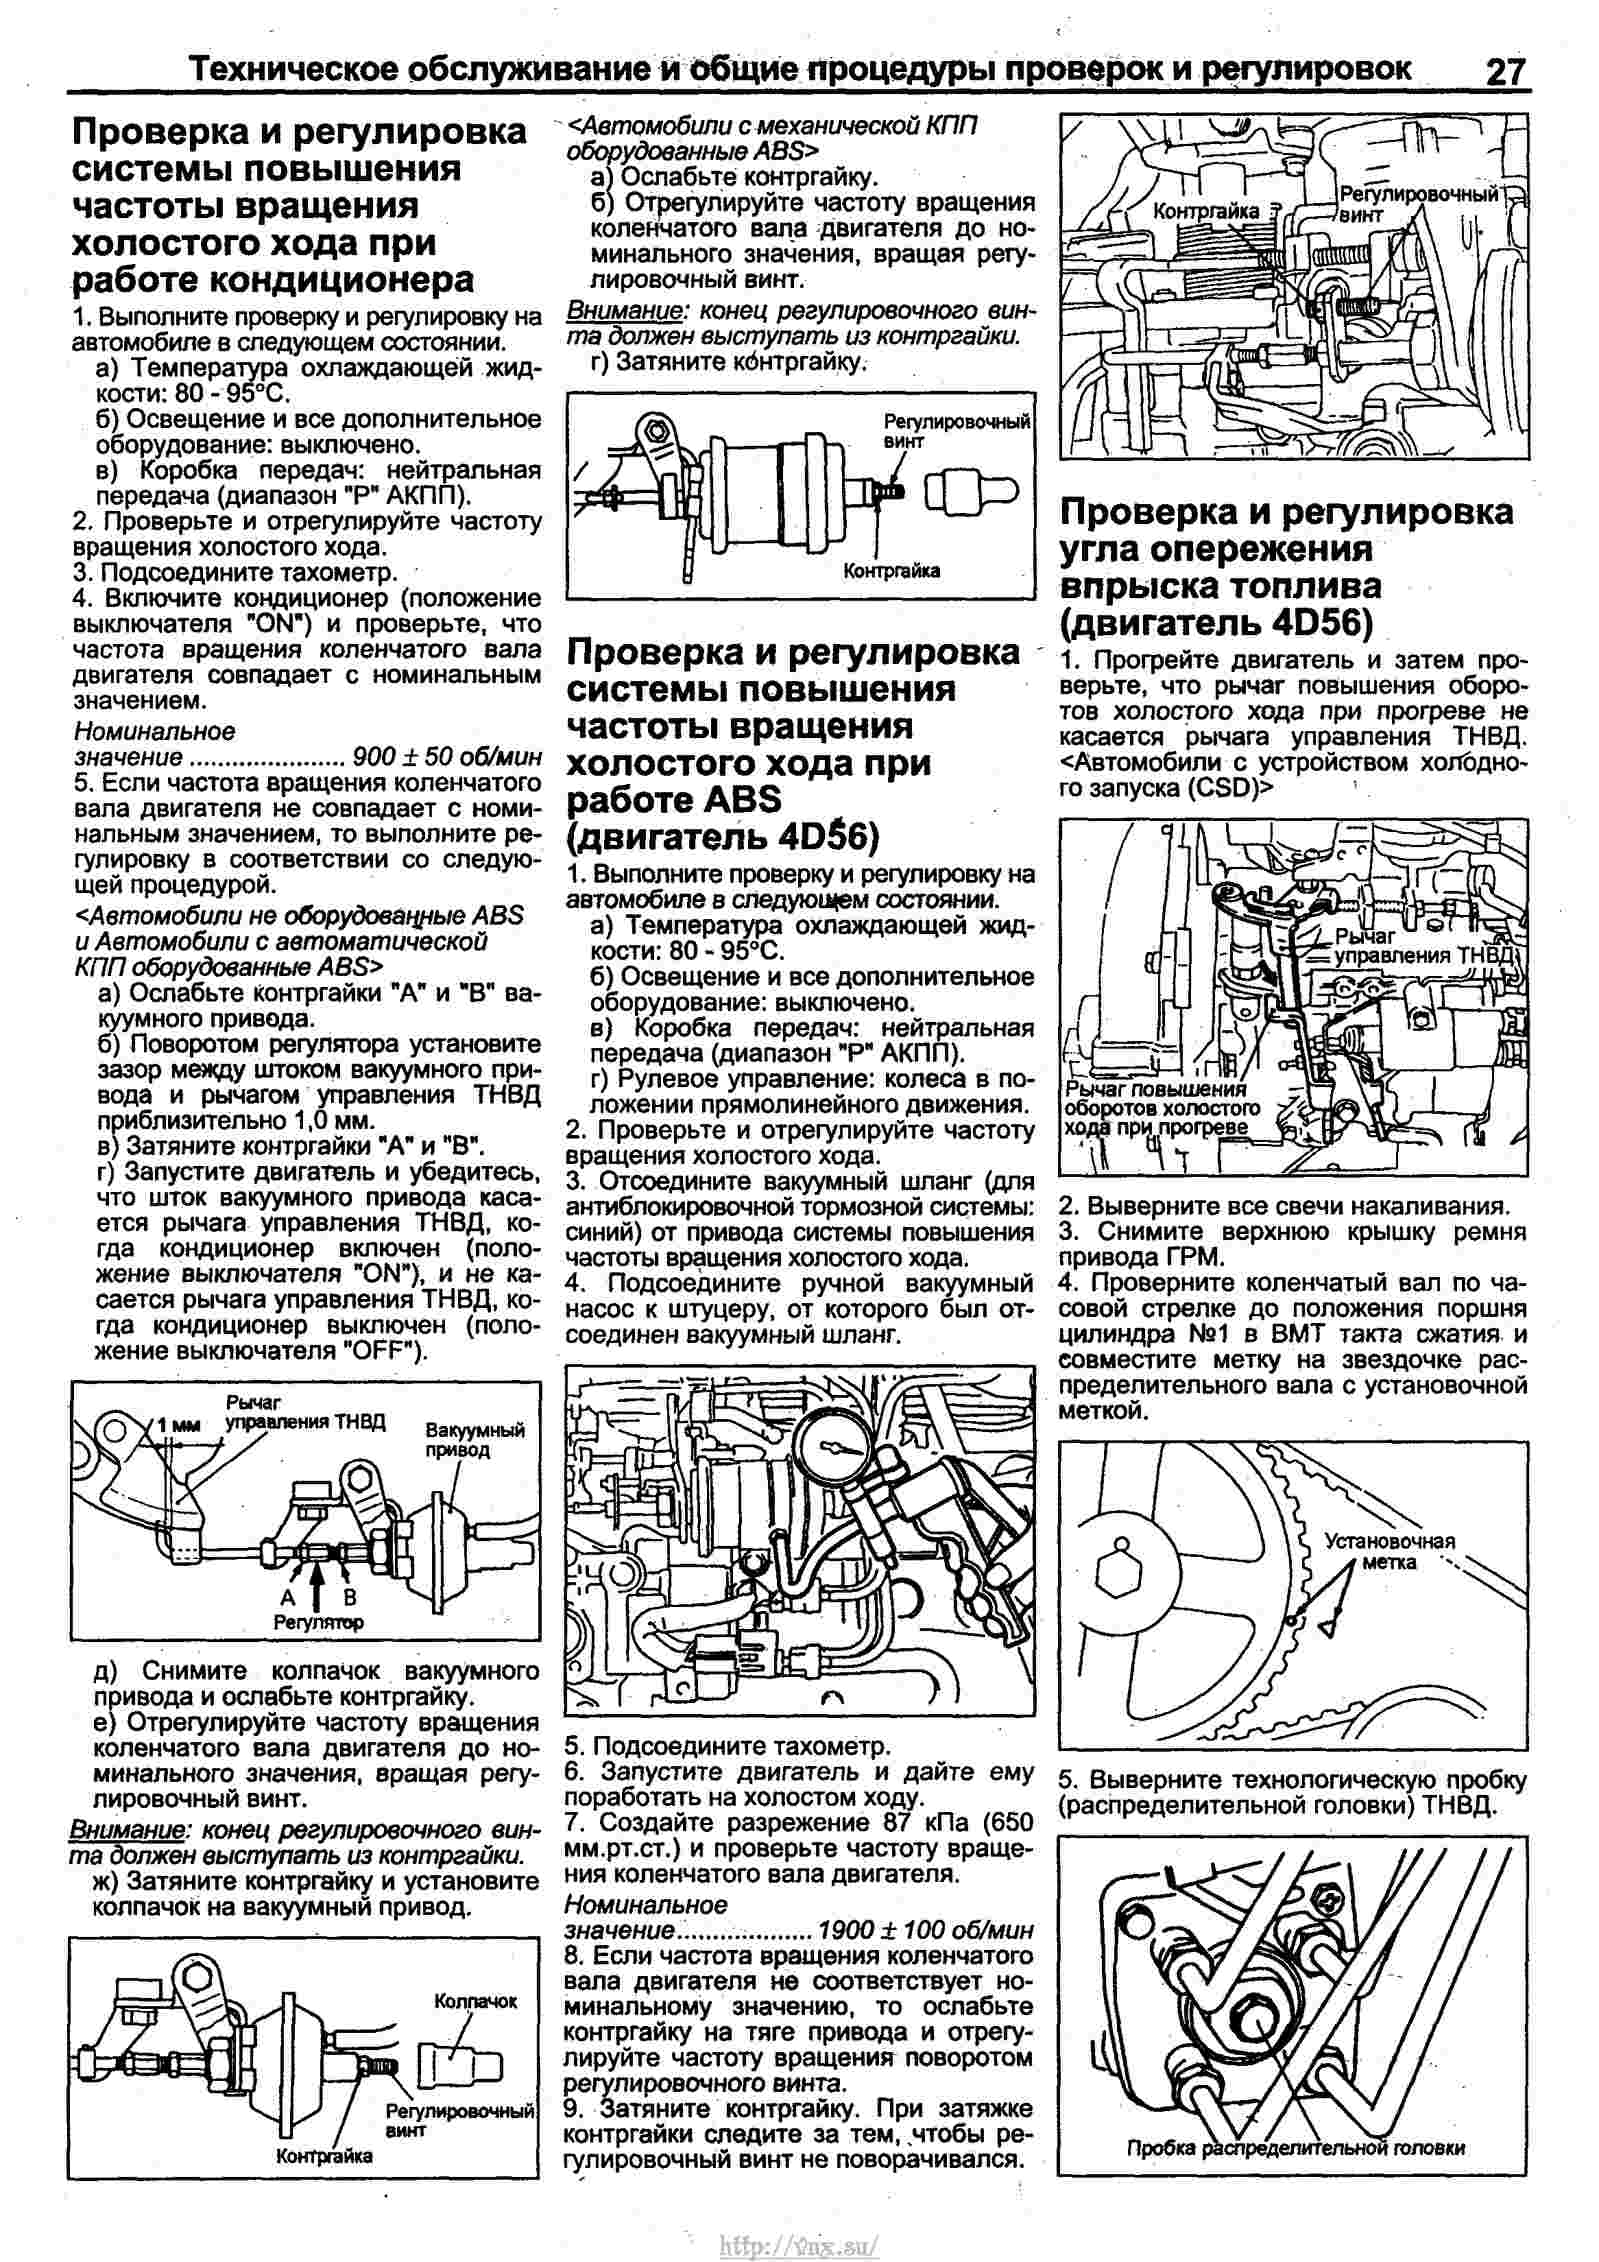 Руководство по ремонту митсубиси паджеро 1982-1998 г.в. полное описание, схемы, фото, технические характеристики